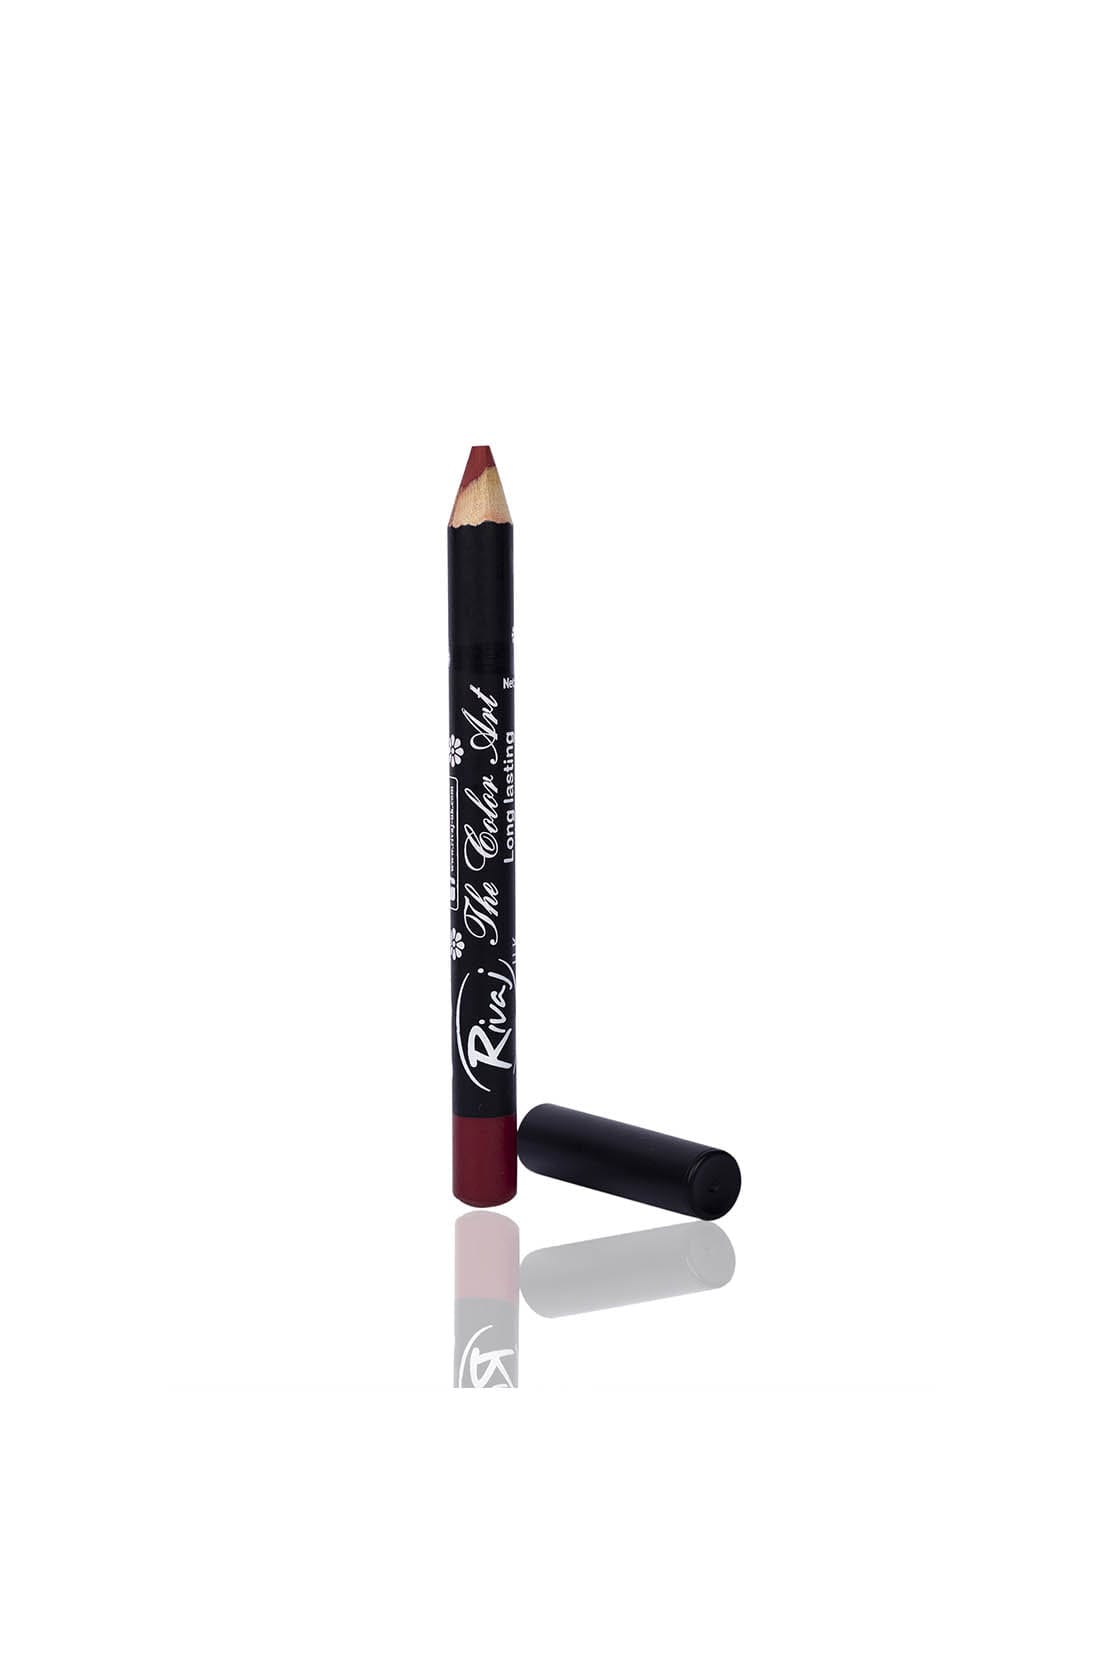 Rivaj UK Cosmetics Lip & Eye Pencil Shade #035 Fire Brick